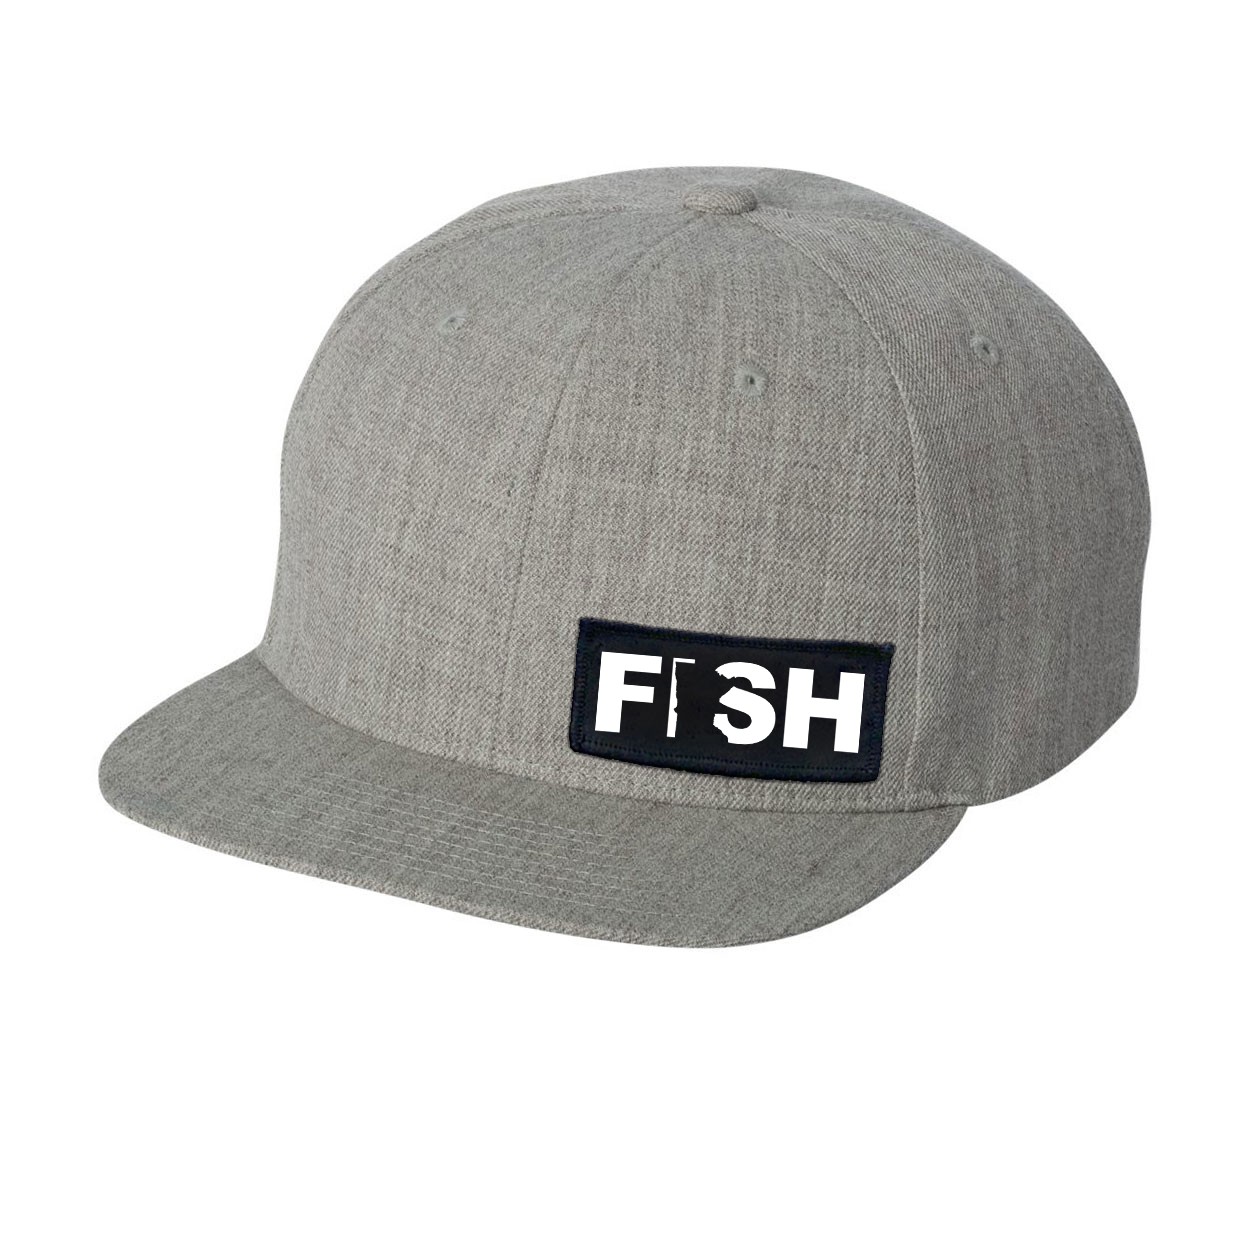 Fish Minnesota Night Out Woven Patch Flat Brim Snapback Hat Heather Gray (White Logo)